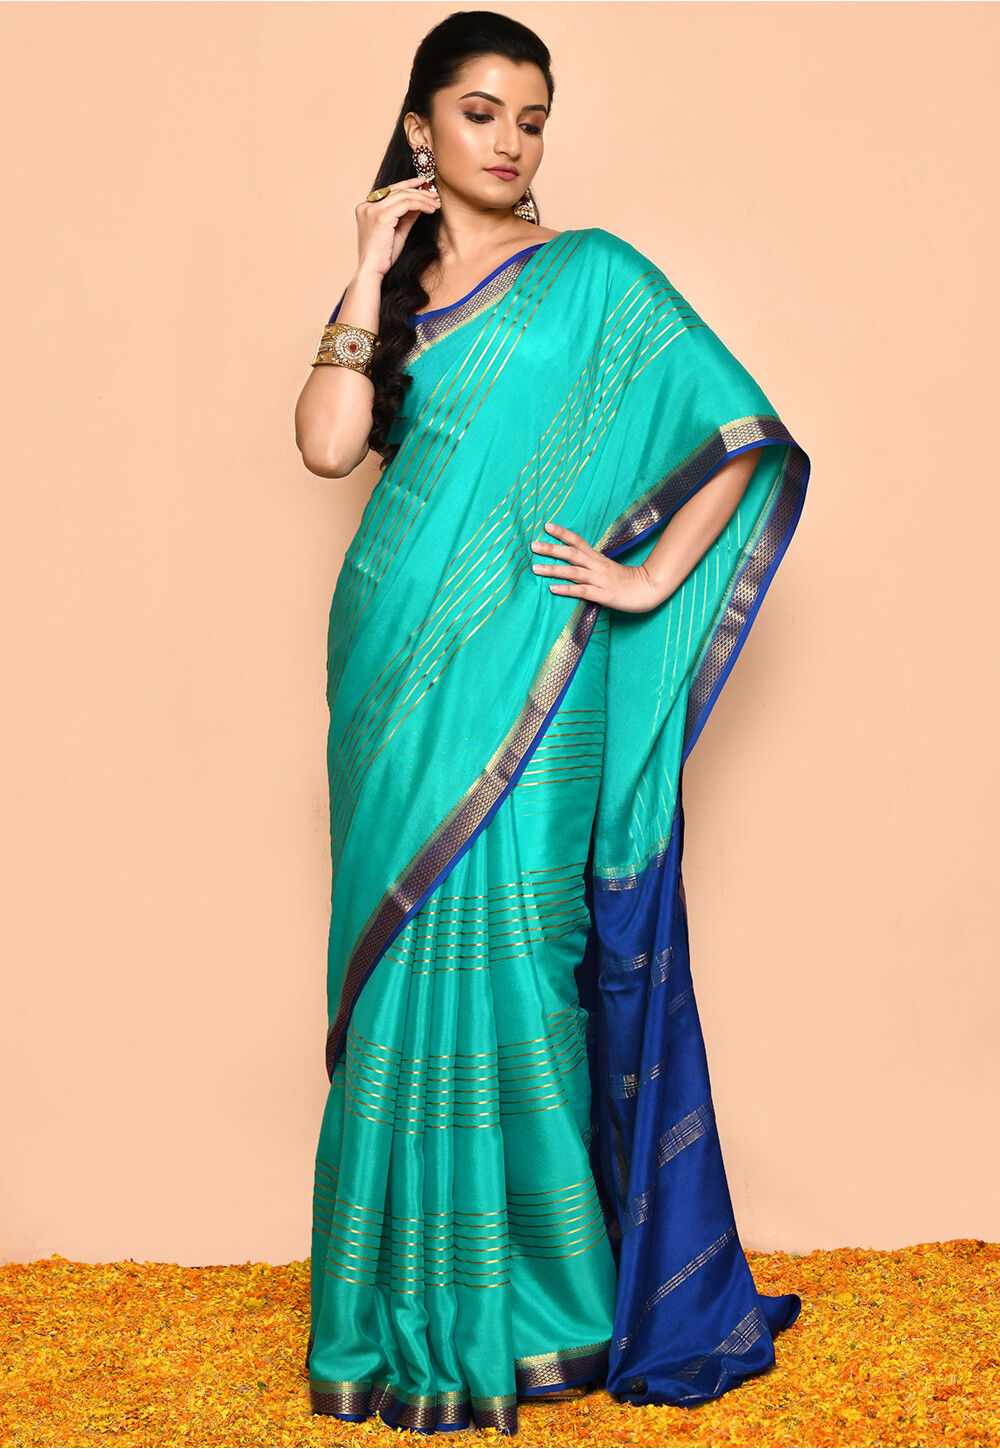 70 Mysore silk ideas | mysore silk saree, mysore, silk-sgquangbinhtourist.com.vn